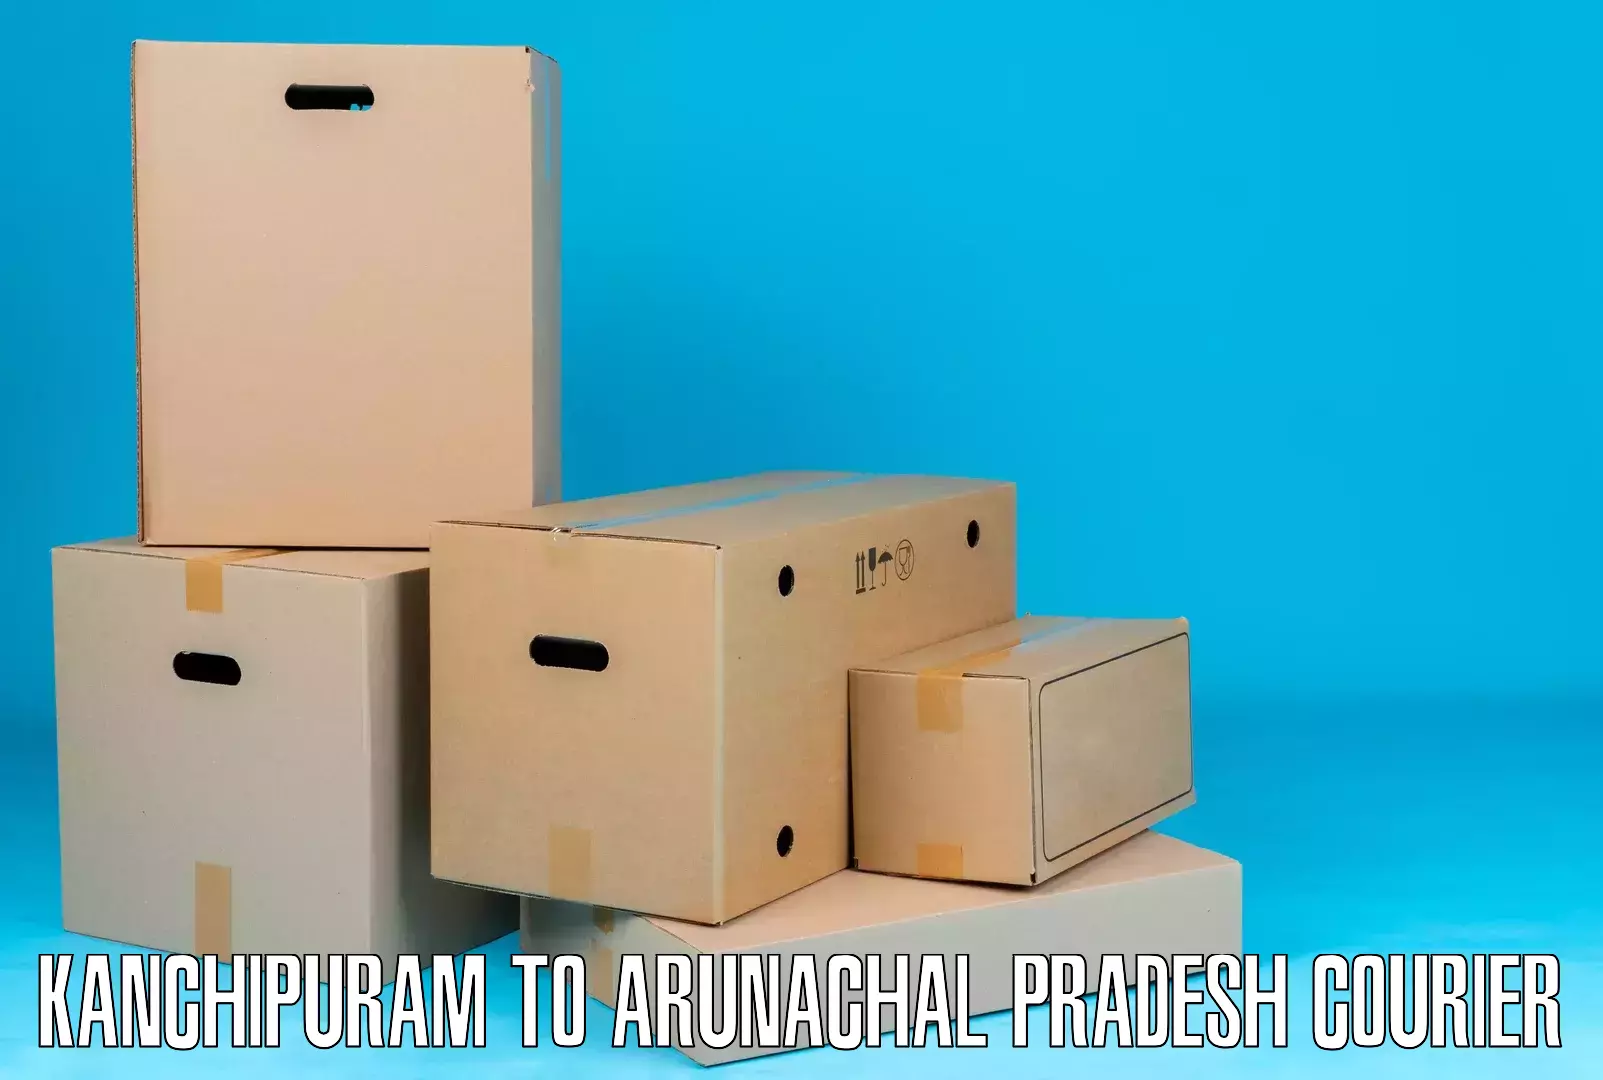 Postal and courier services Kanchipuram to Arunachal Pradesh